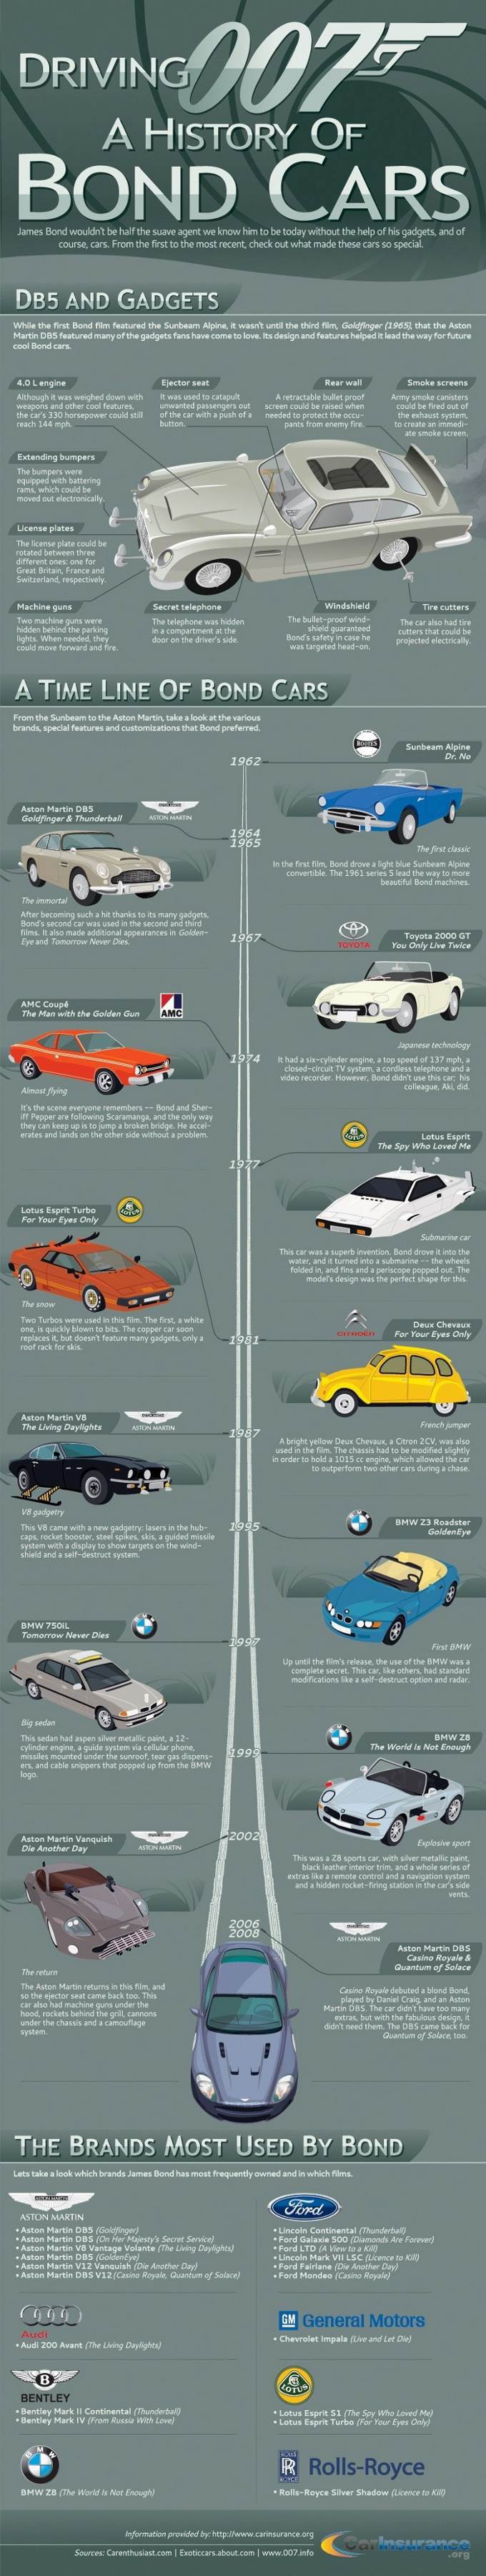 Obrázek A History of Bond Cars